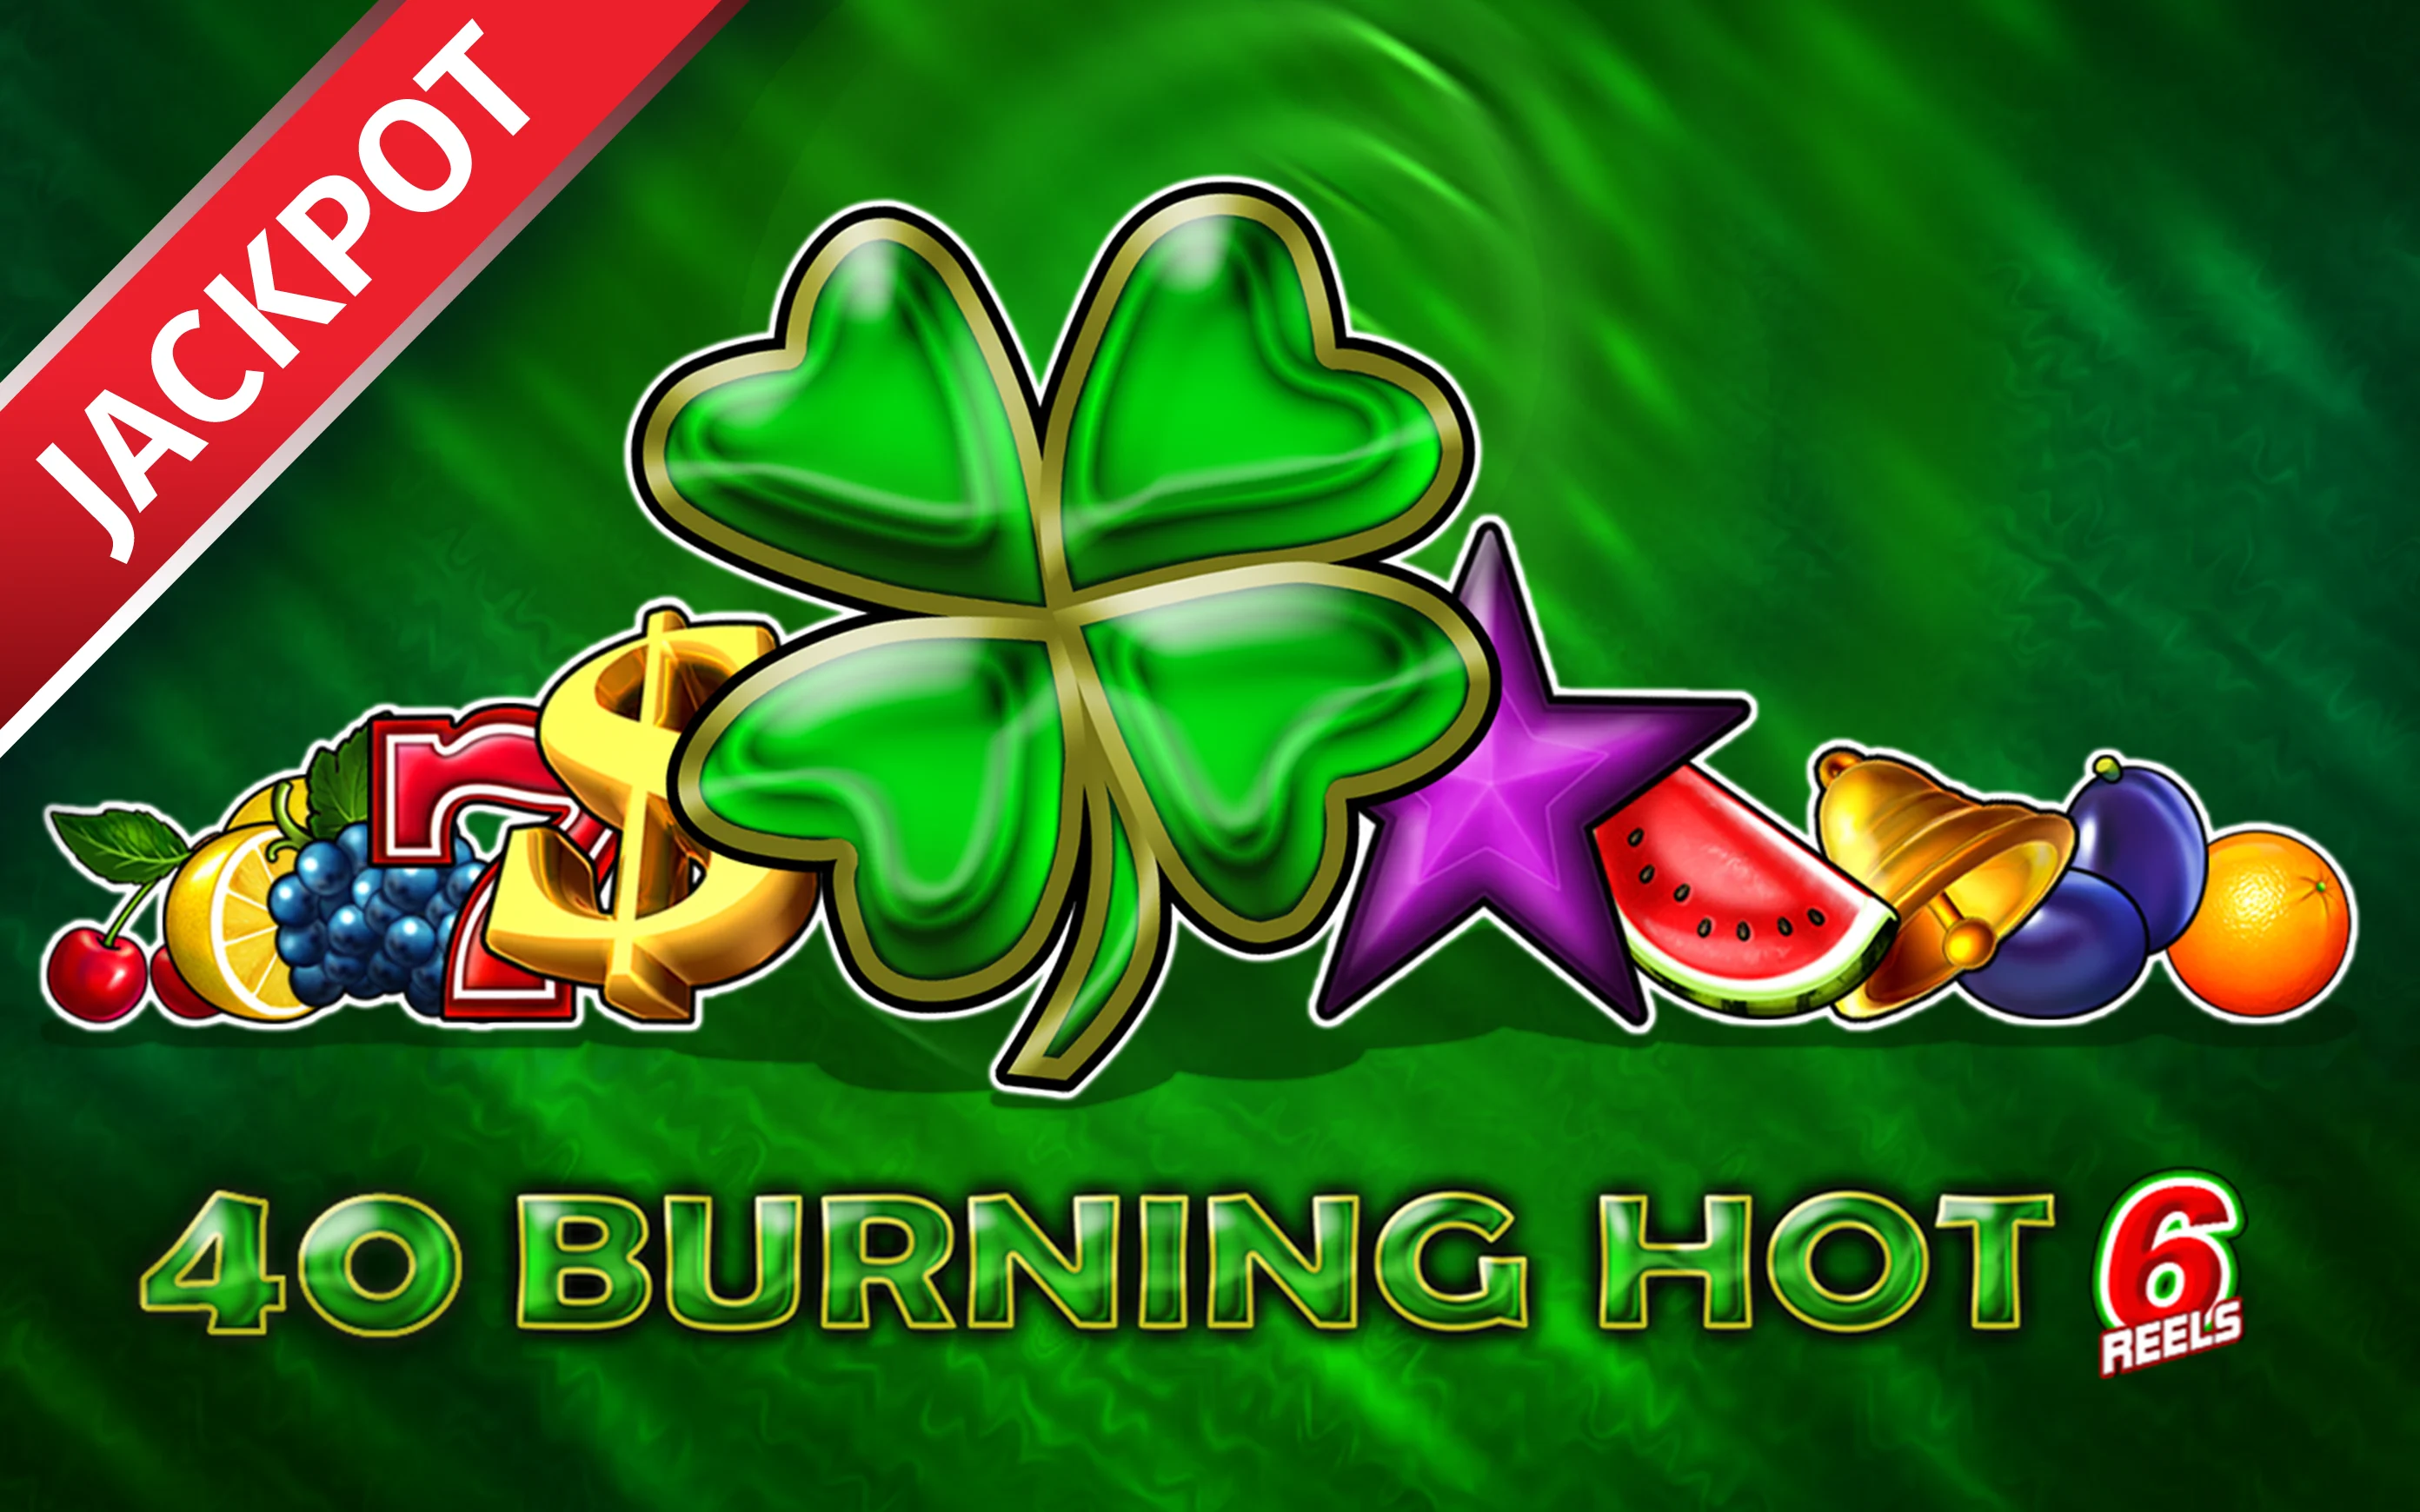 Chơi 40 Burning Hot 6 Reels trên sòng bạc trực tuyến Starcasino.be